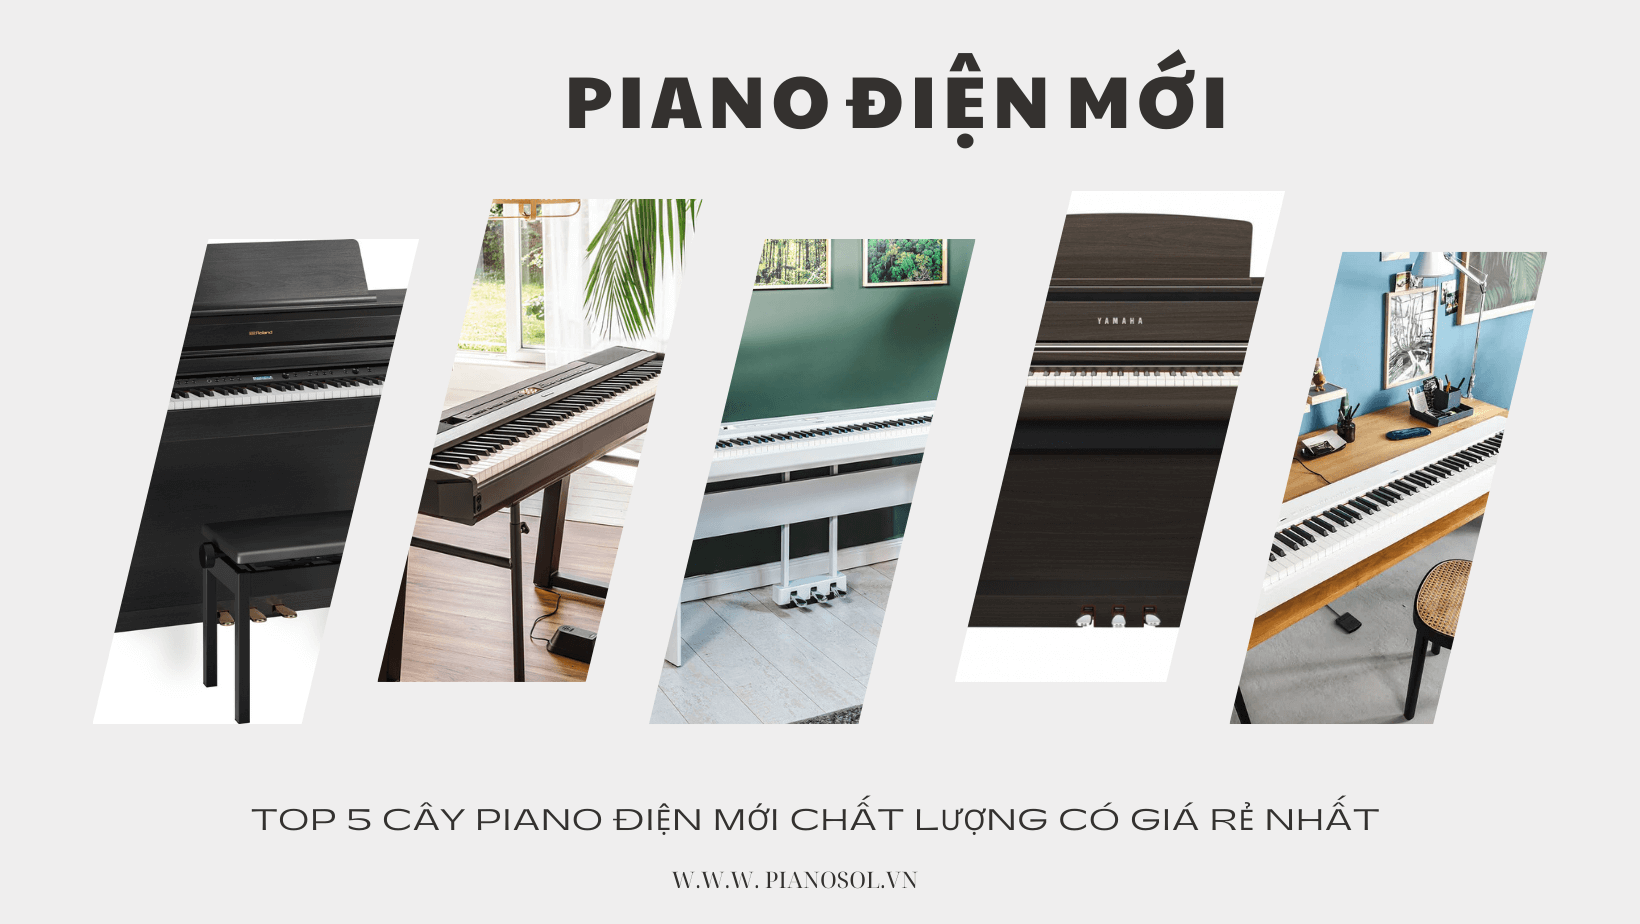 Top 5 cây piano điện mới chất lượng giá rẻ nhất